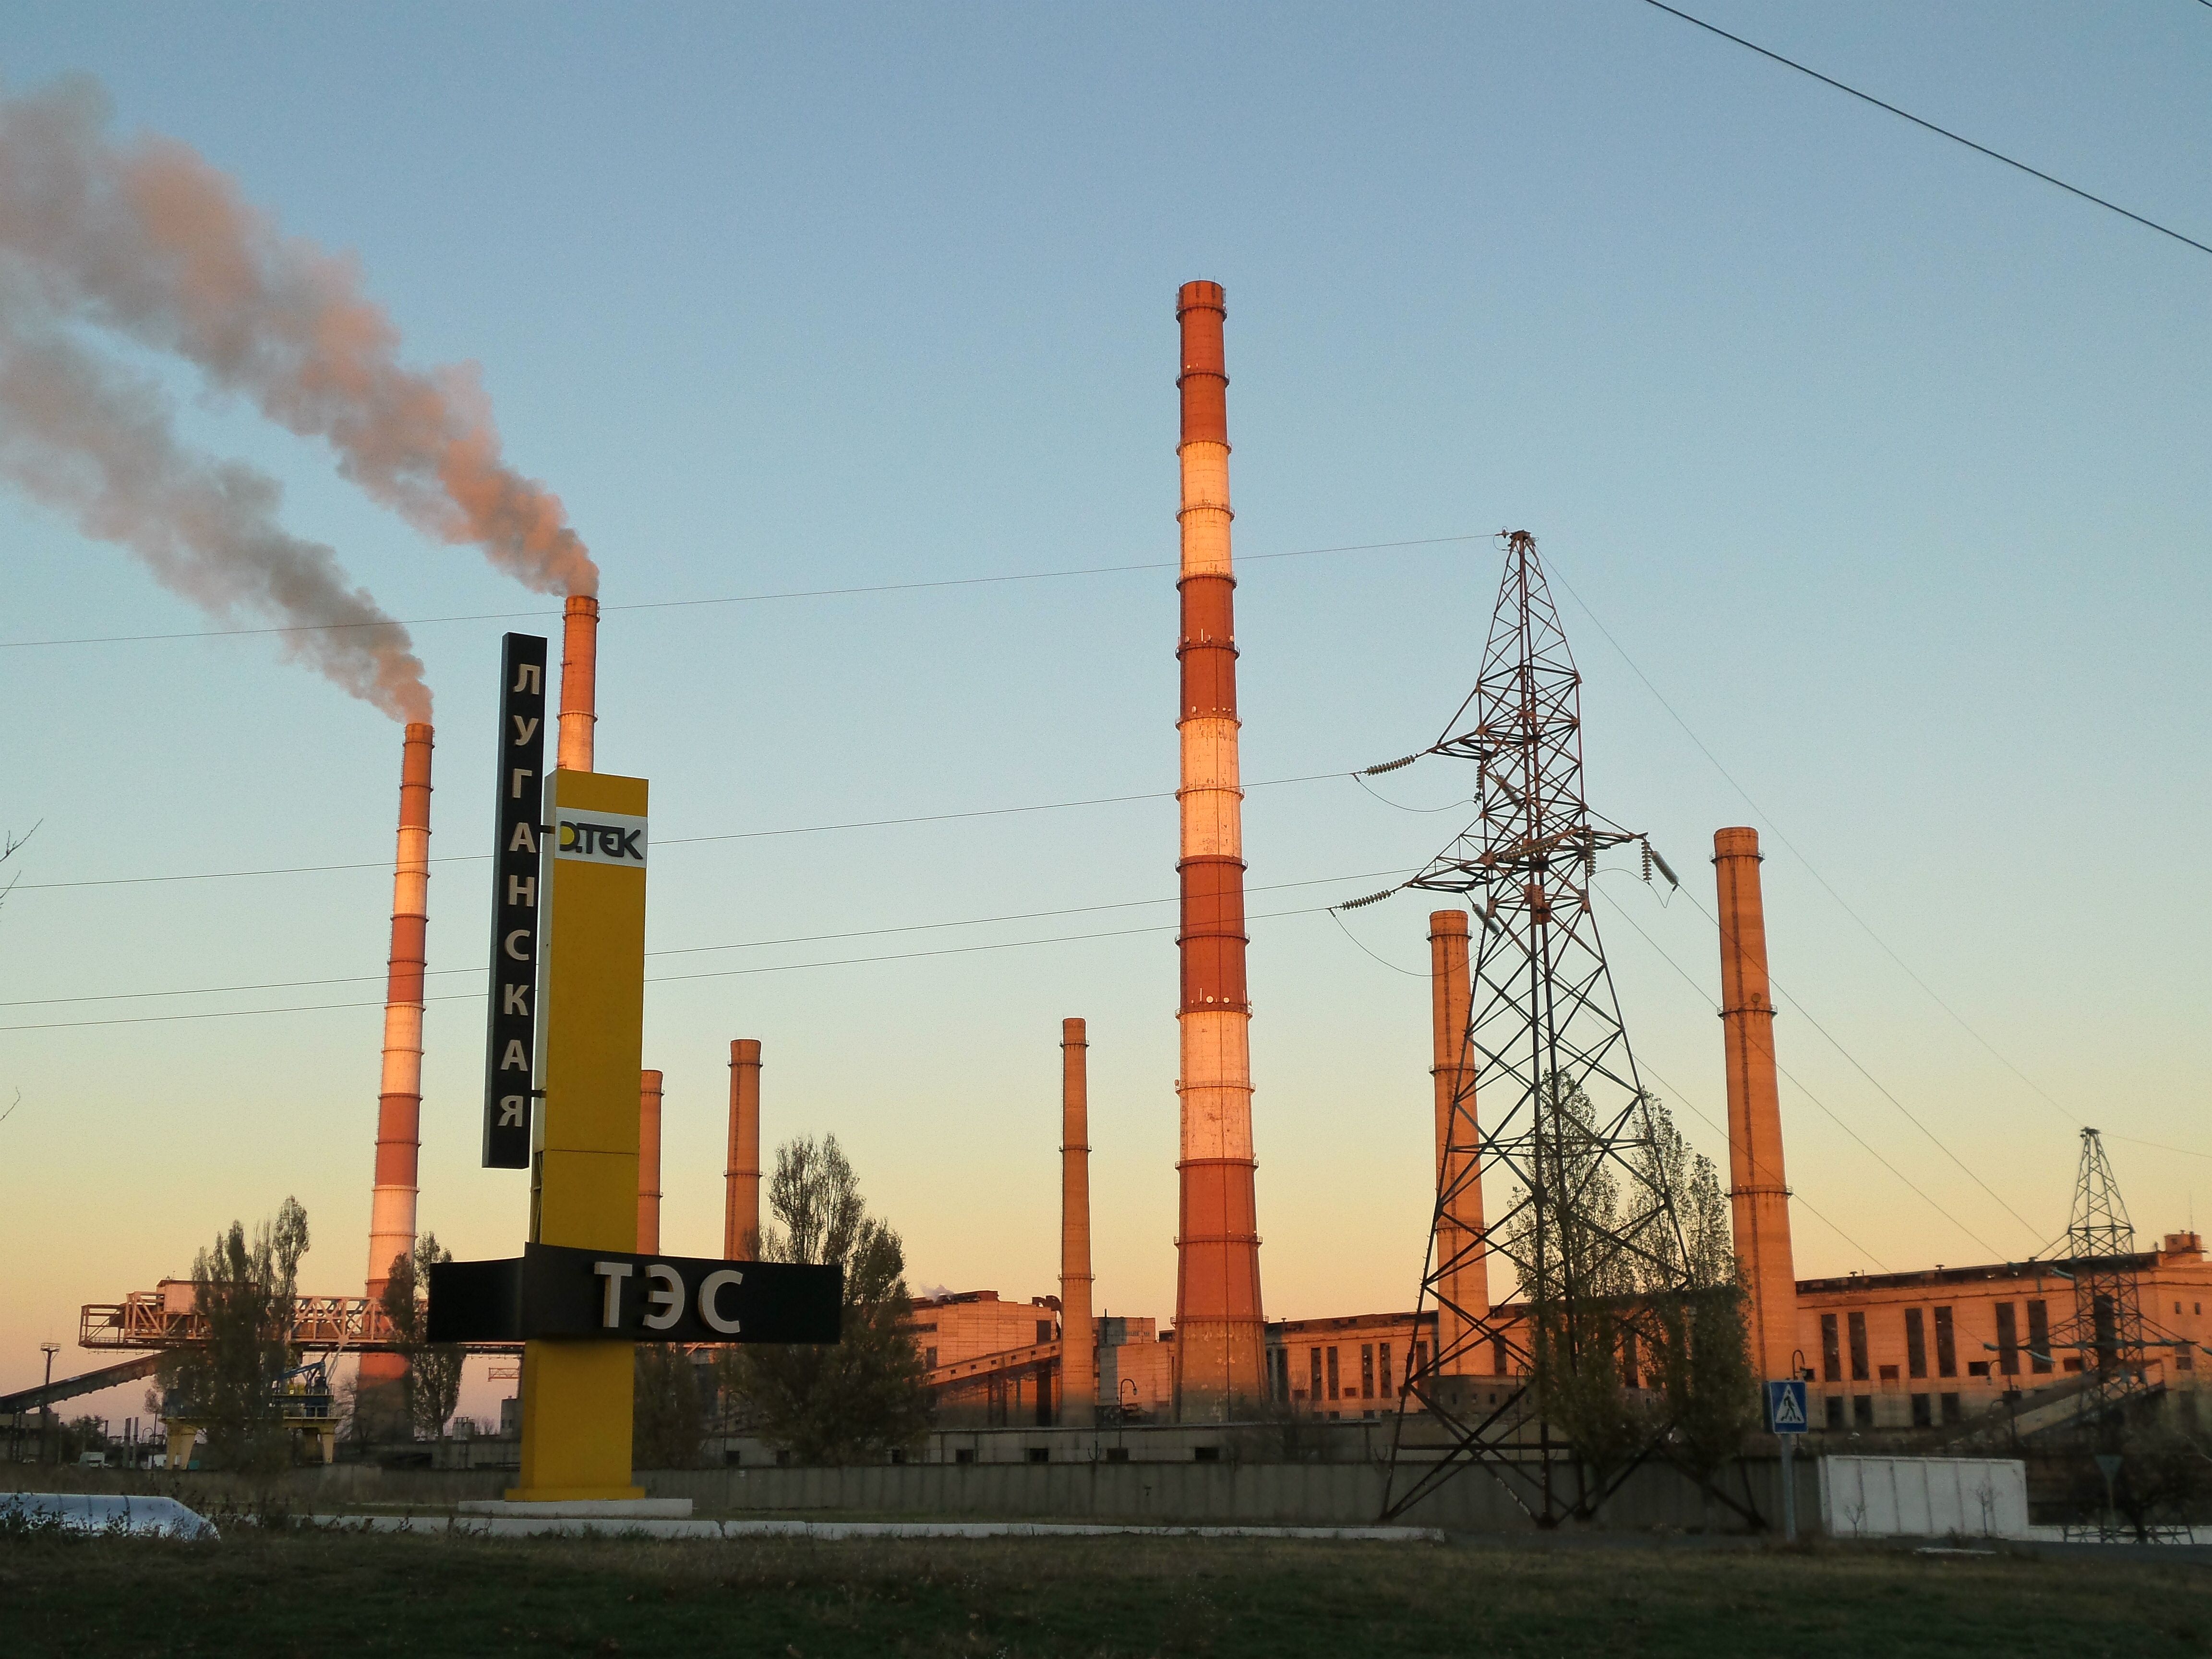 Енергосистема України не відчує проблем через Луганську ТЕС - Насалик